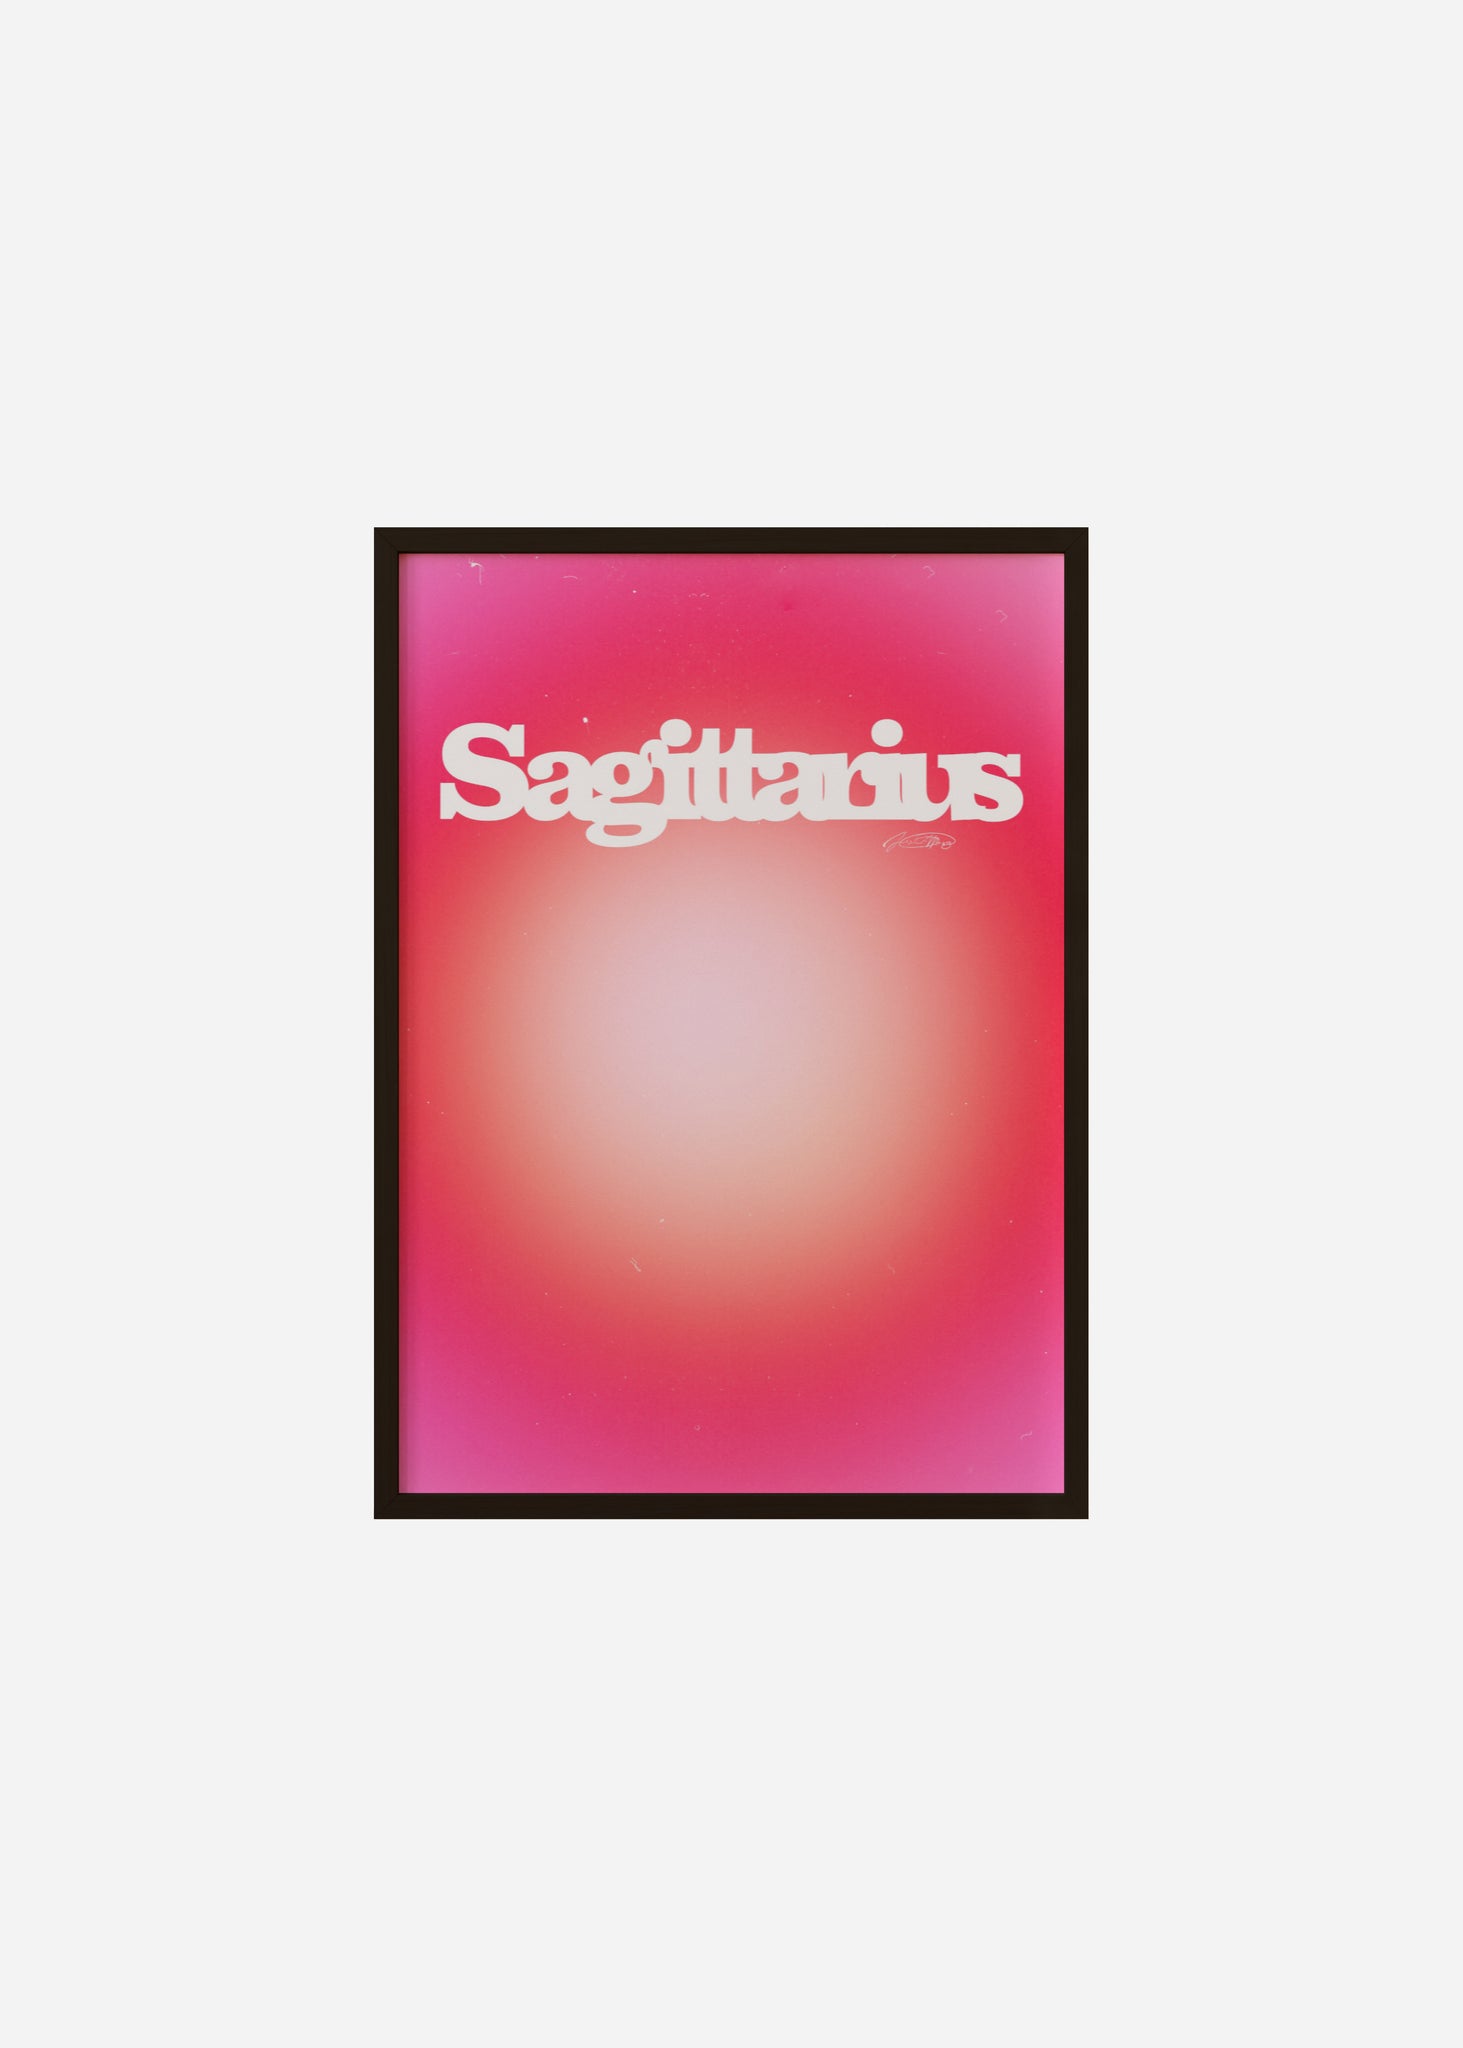 Sagittarius Aura Framed Print